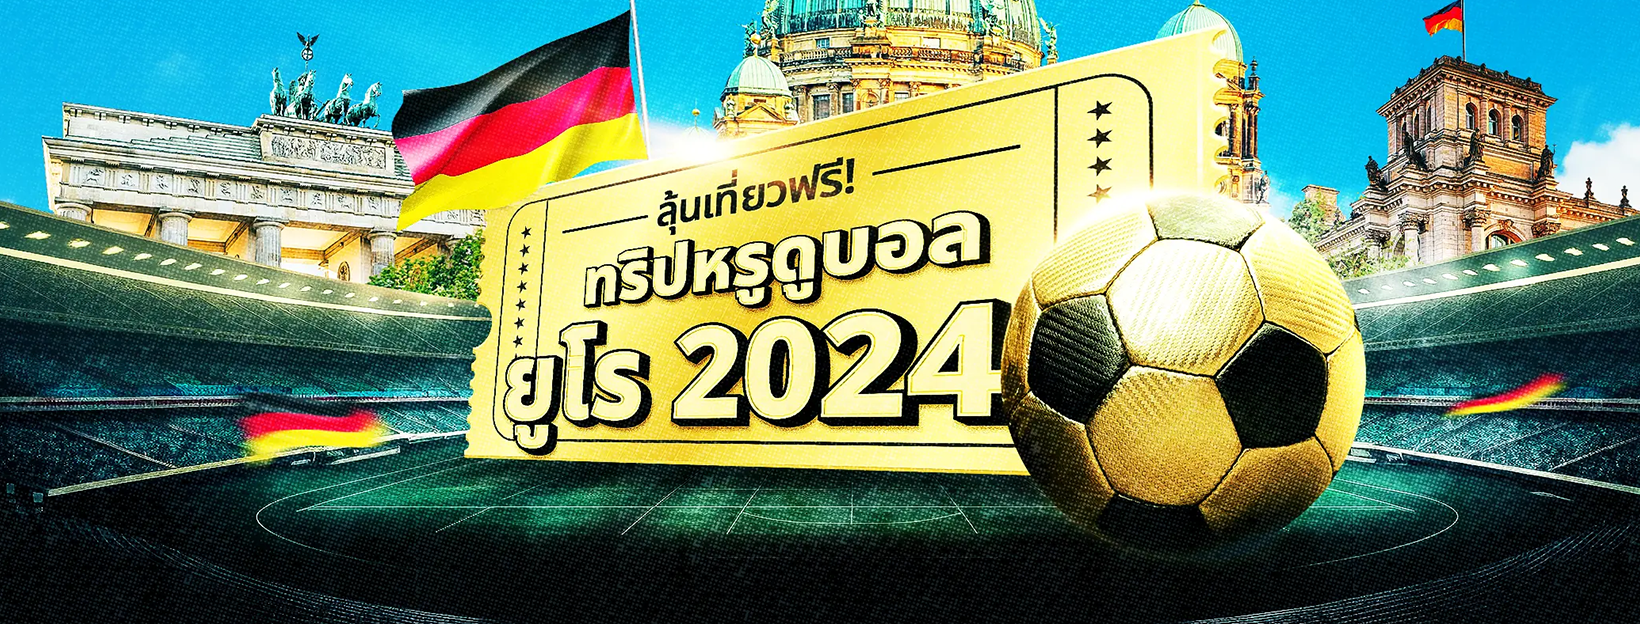 ลุ้นทริปหรู พาดูบอลยูโร 2024 ถึงเยอรมนี!